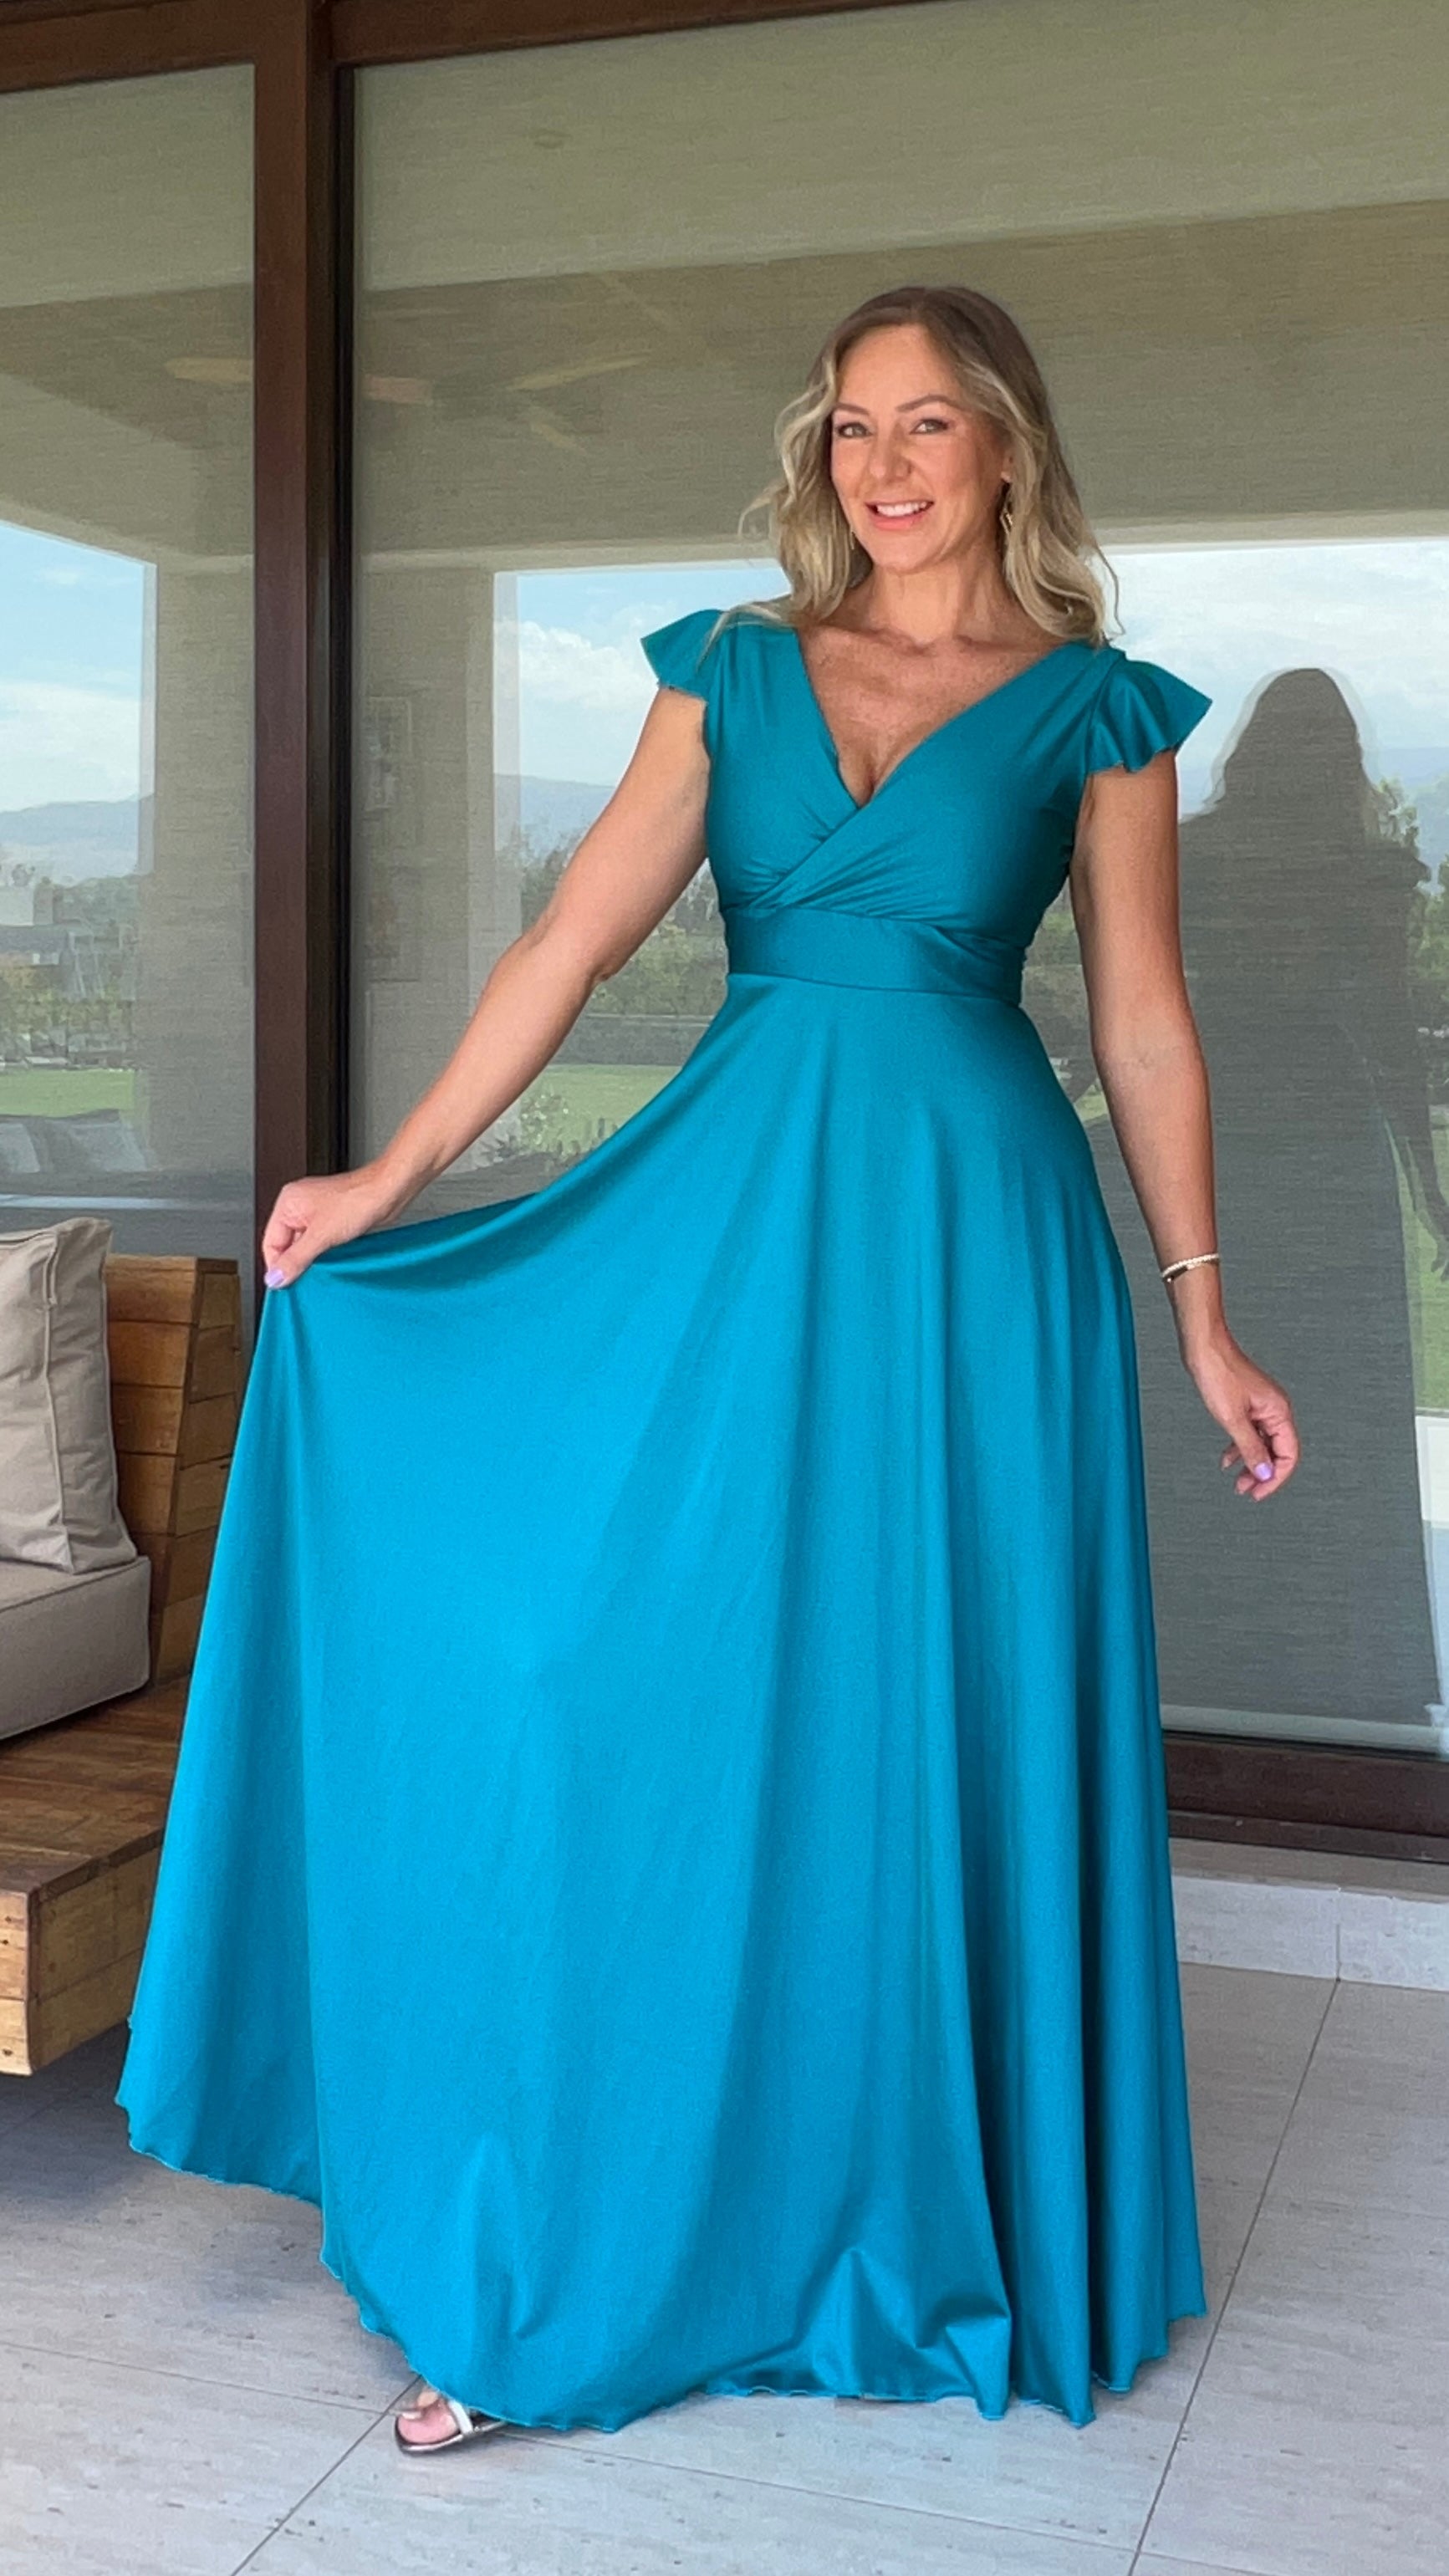 Vestido Isabella Dupont Azul Turquesa| Vestido Largo de Fiesta Calipso | Amoramar.cl 4